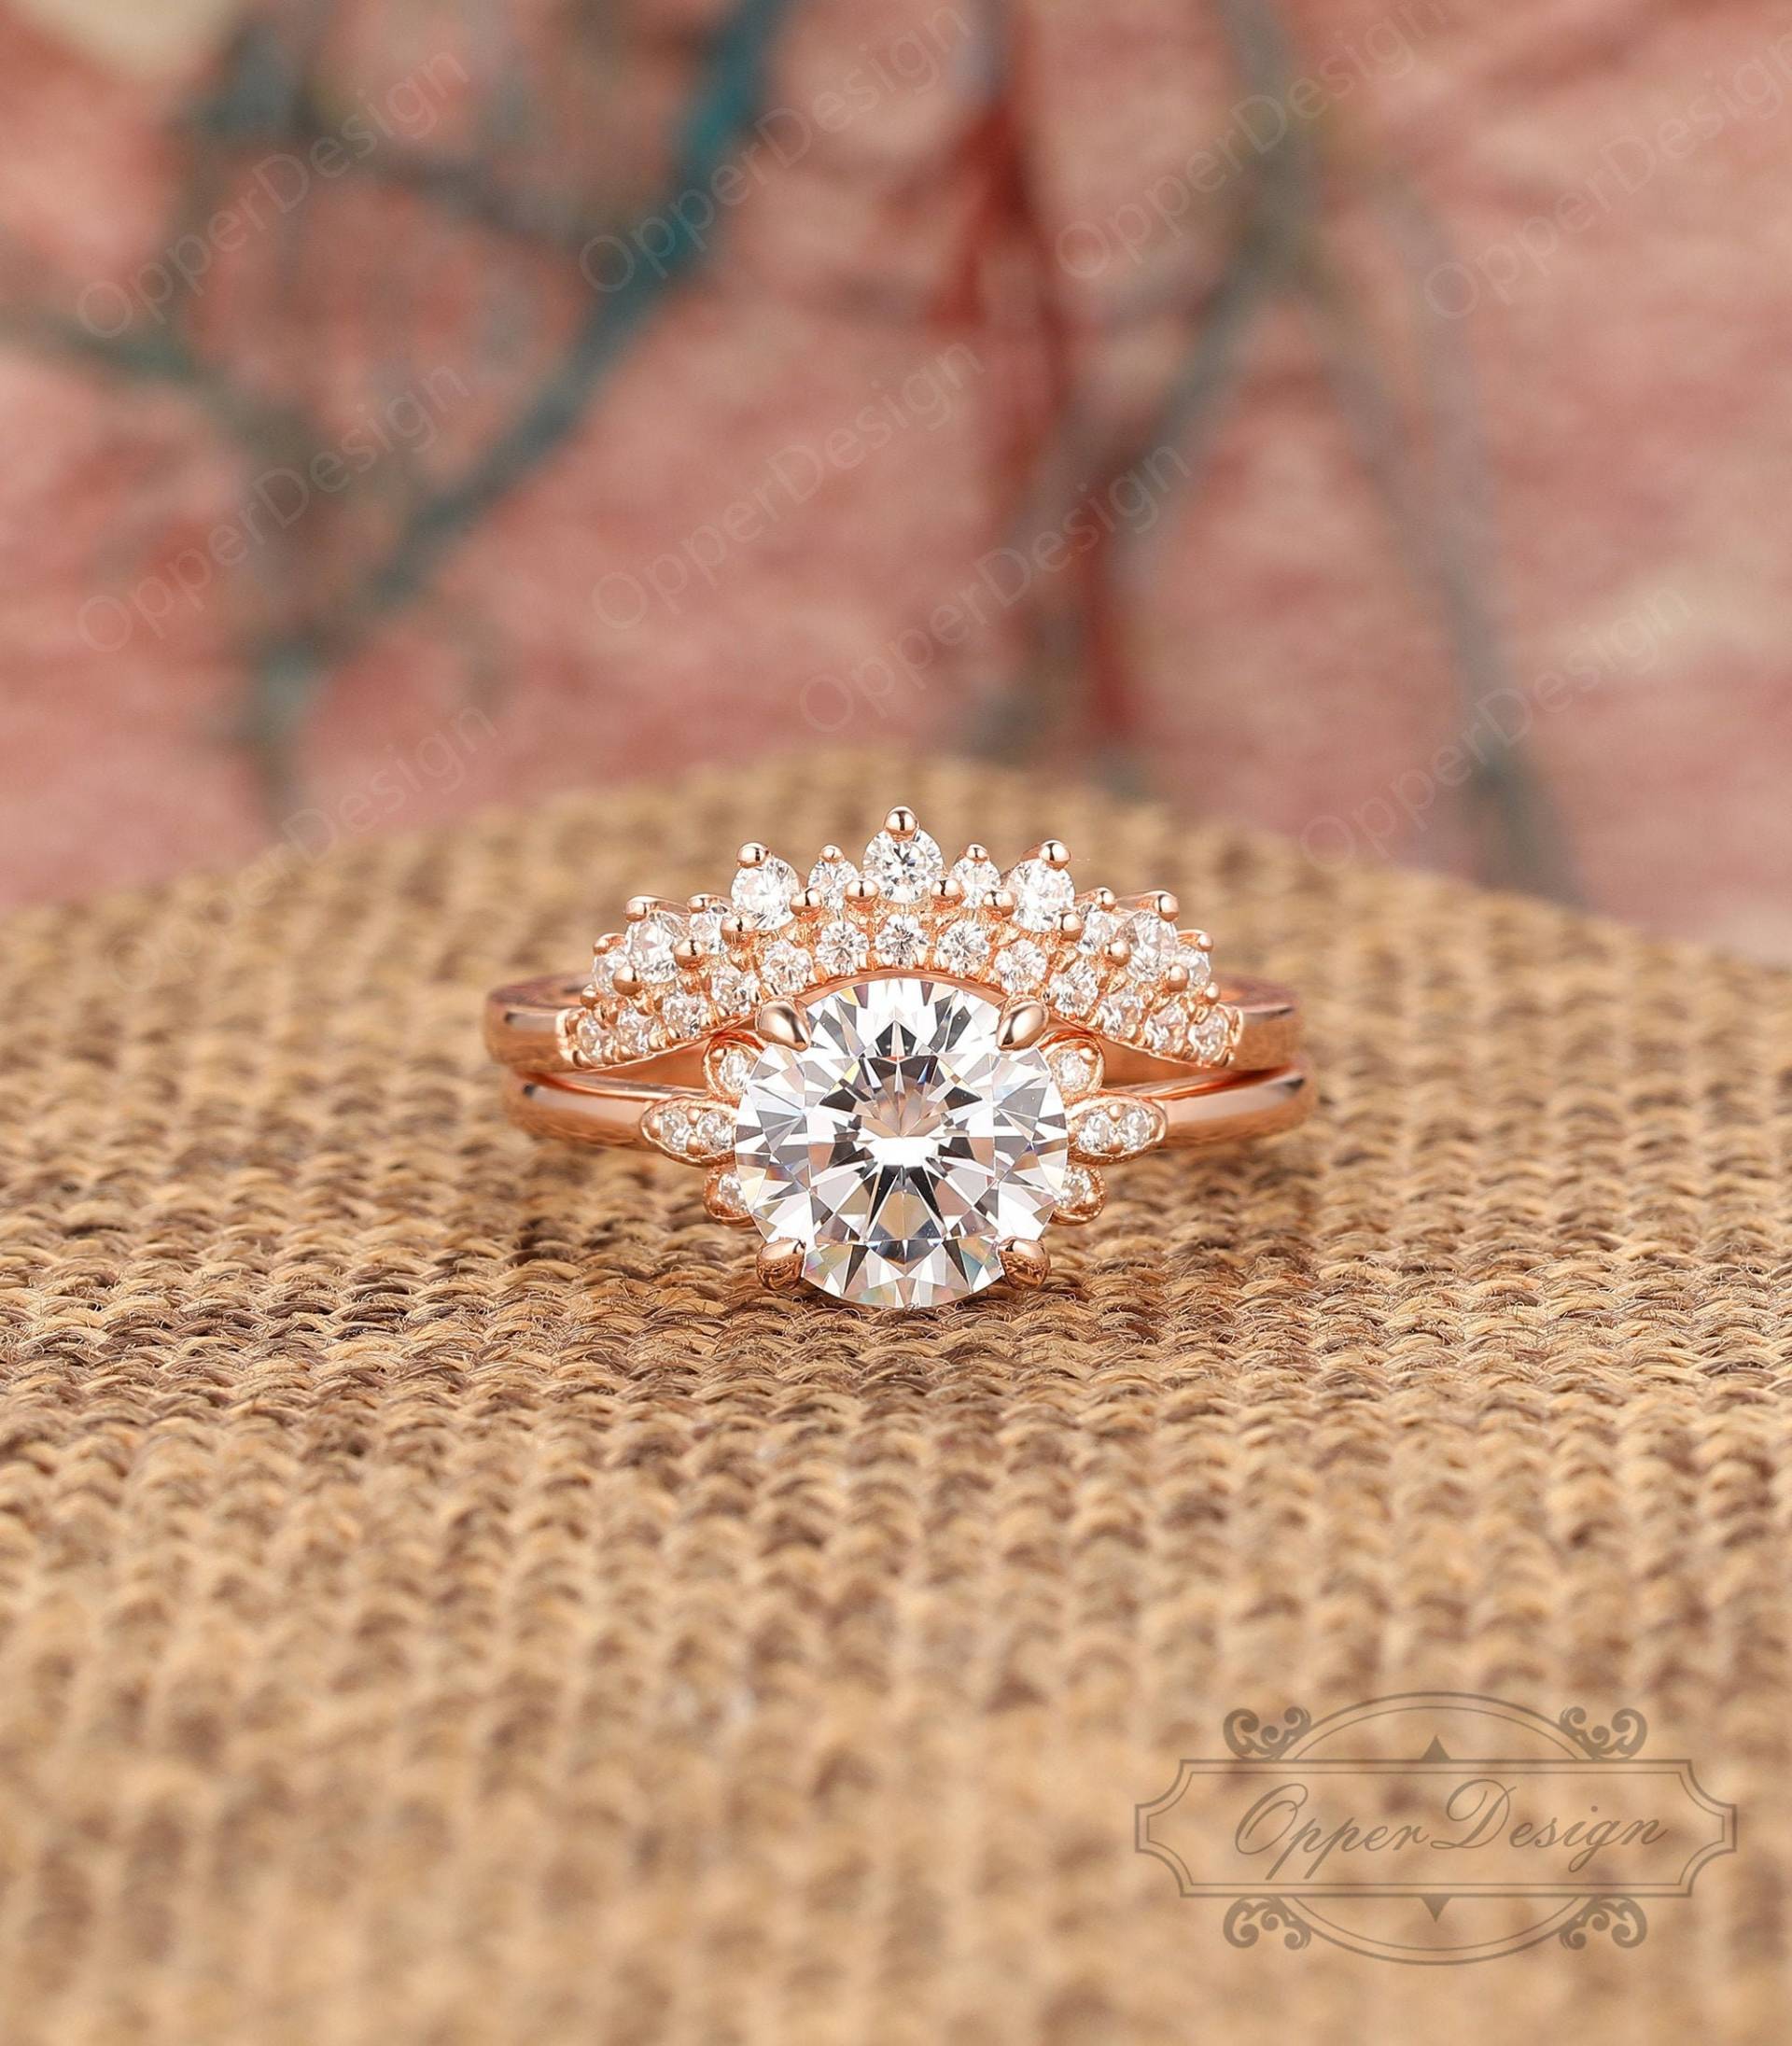 Handgemachter Simulierter Diamant Ring, 2 Stück Ringe, Rundschnitt 8mm Moissanite Verlobungsring, Stapelbarer Personalisierter Frauenring, Braut Set von OpperDesign